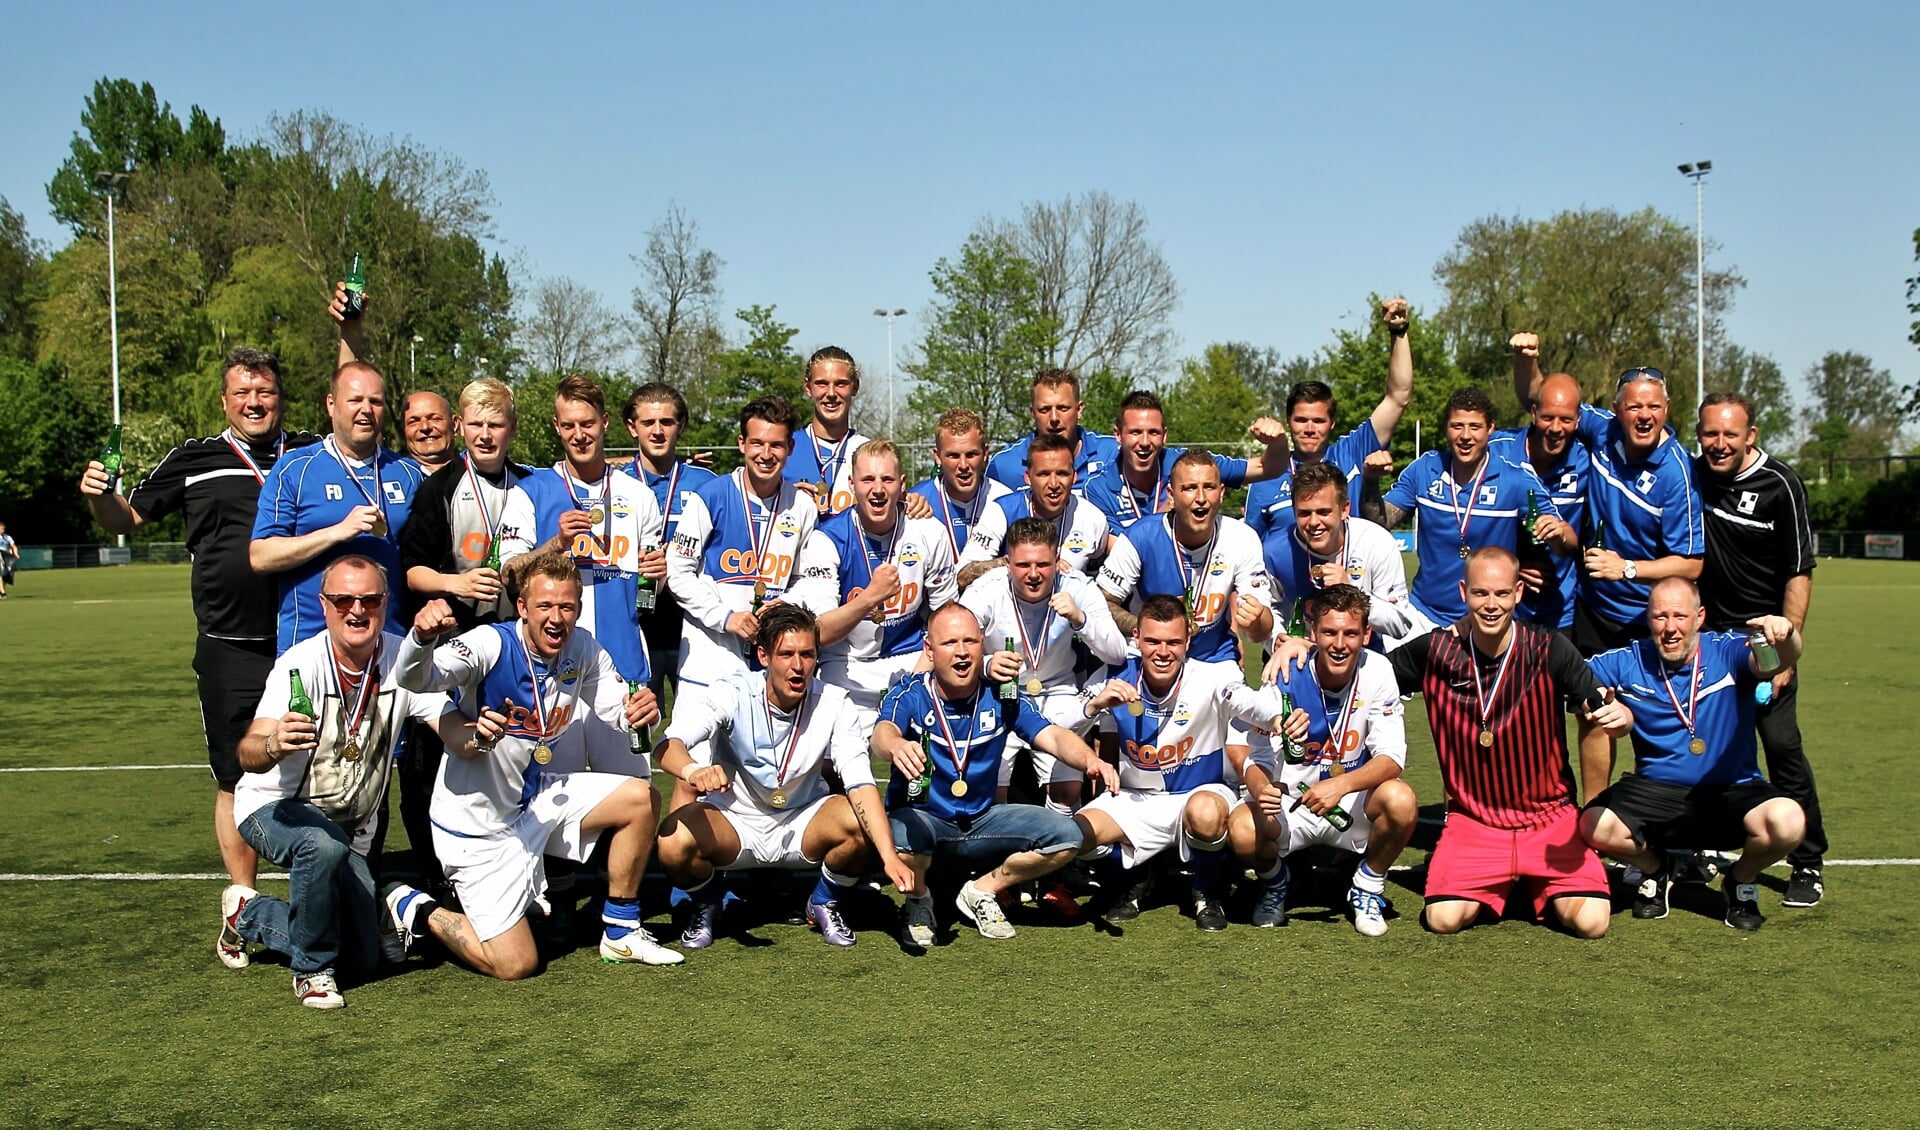 Grote blijdschap bij de spelers en begeleiding van SV Wippolder, kort nadat de titel een feit was en de KNVB-medailles konden worden uitgereikt. (foto: Koos Bommelé) 